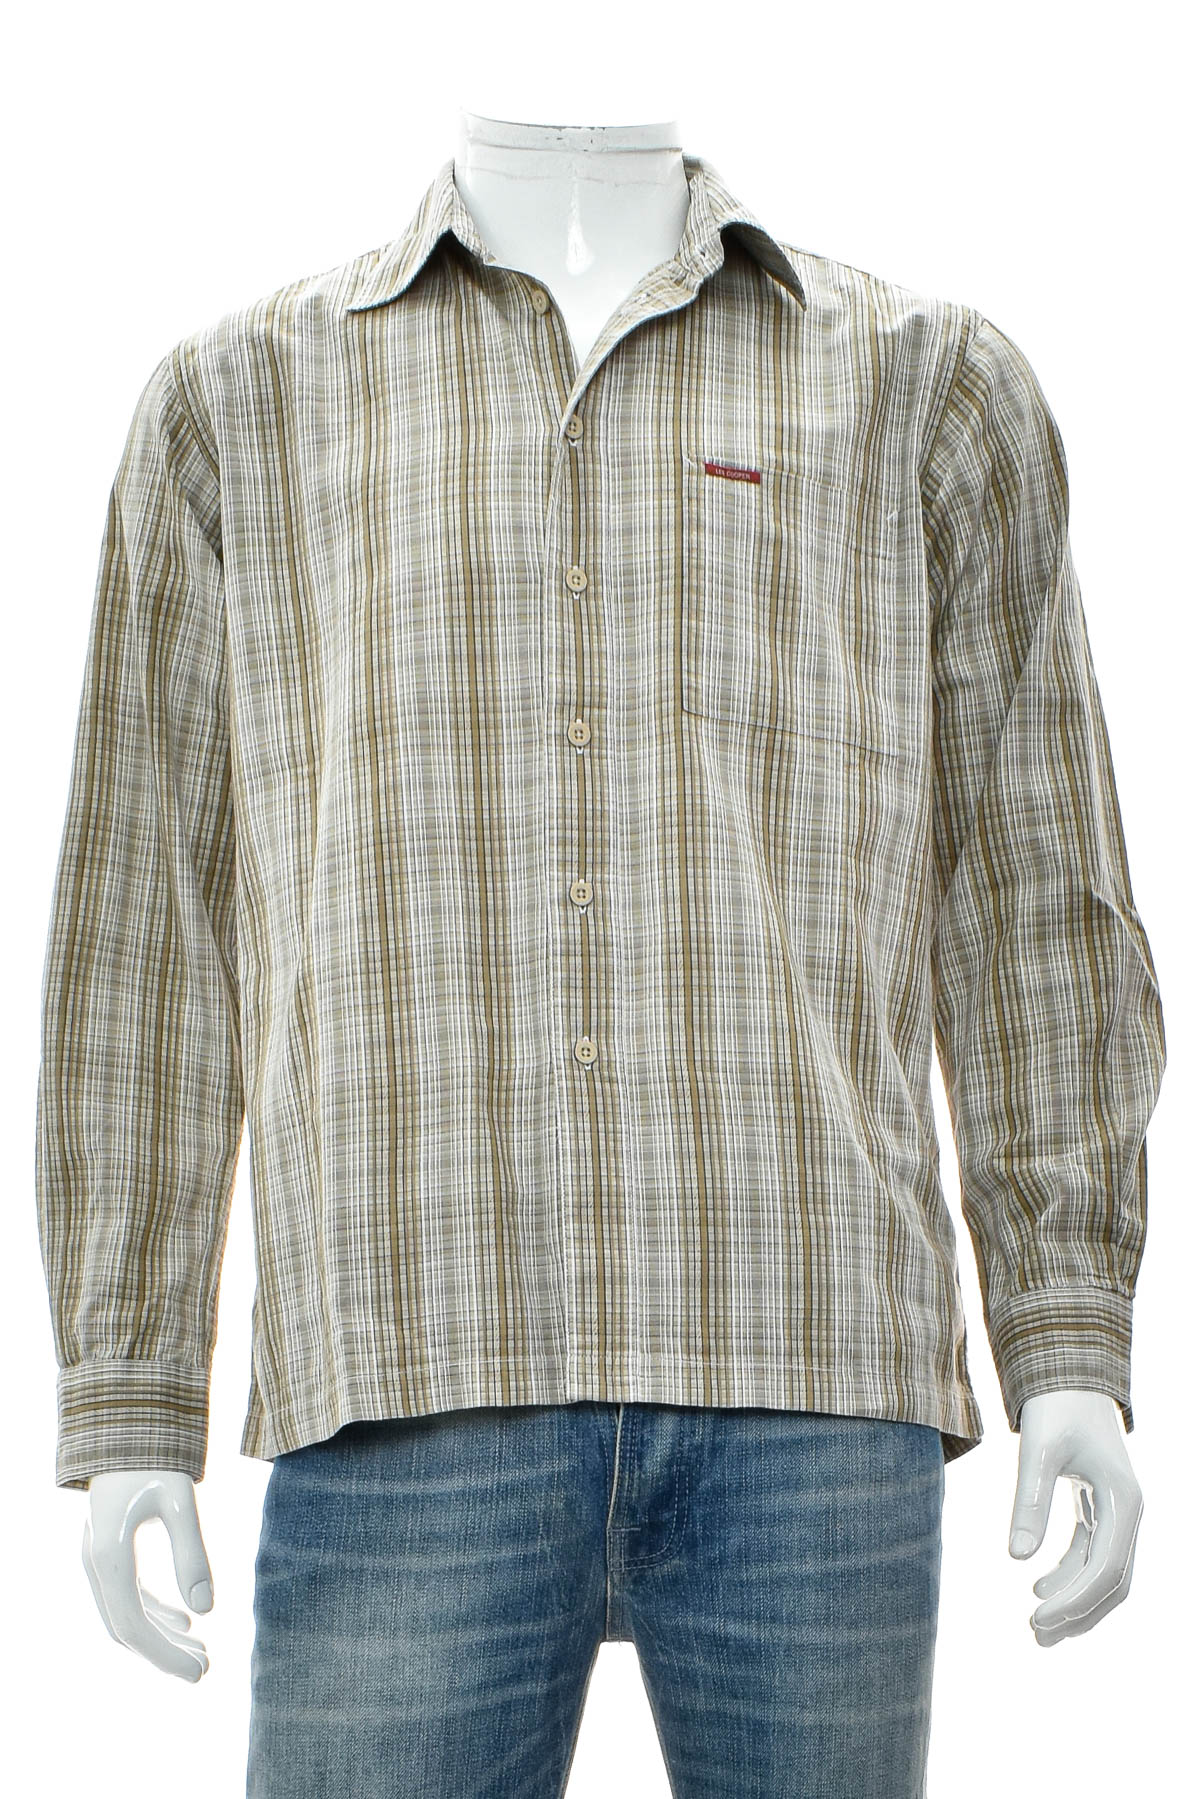 Ανδρικό πουκάμισο - Lee Cooper - 0